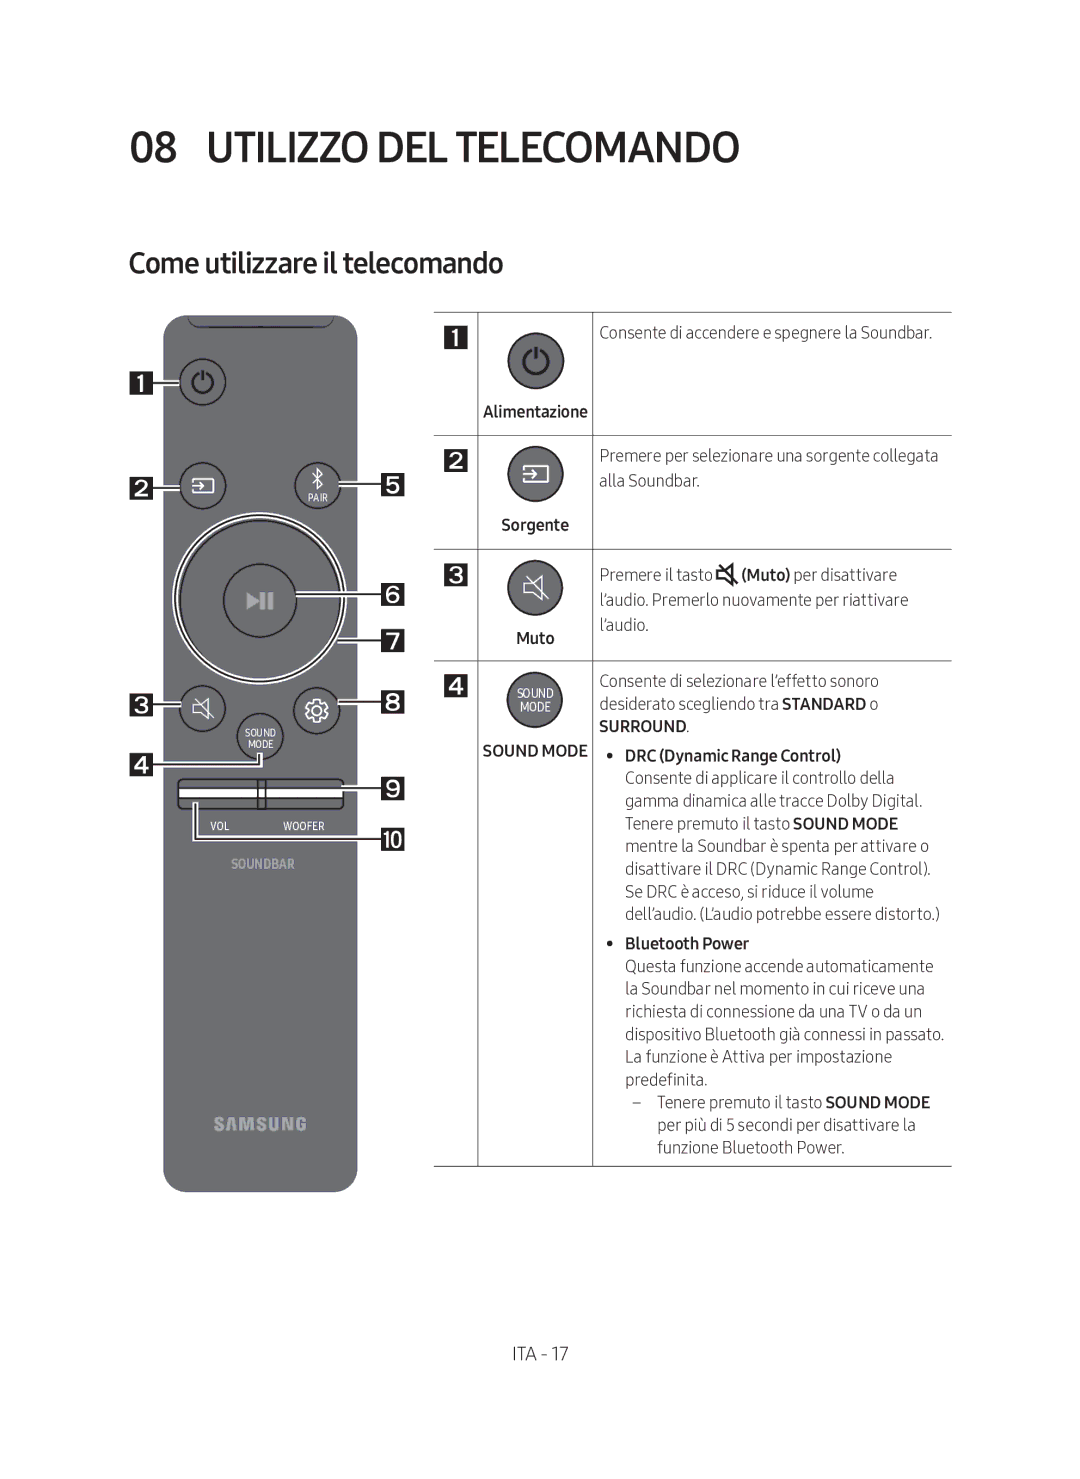 Samsung HW-N450/ZF manual Utilizzo DEL Telecomando, Come utilizzare il telecomando, Muto 